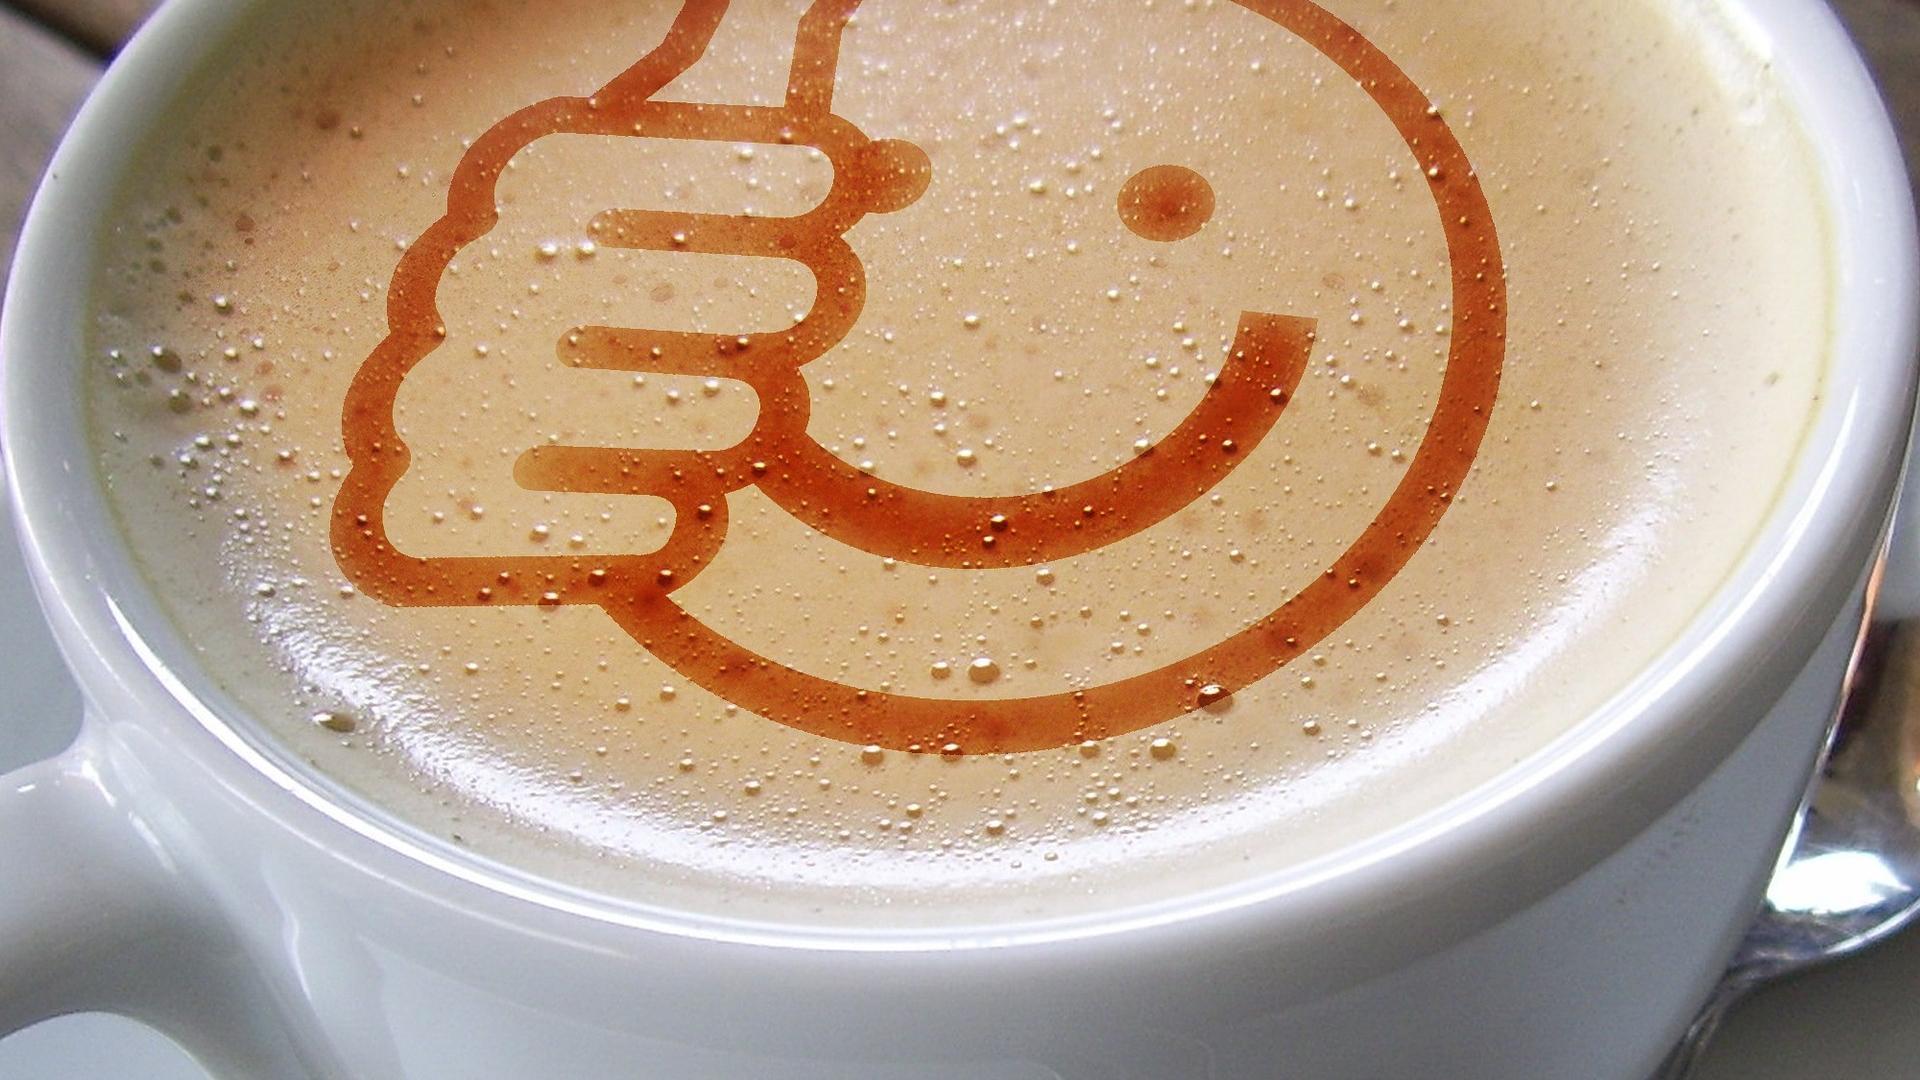 Kopje koffie met een positieve smiley in het schuim getoond